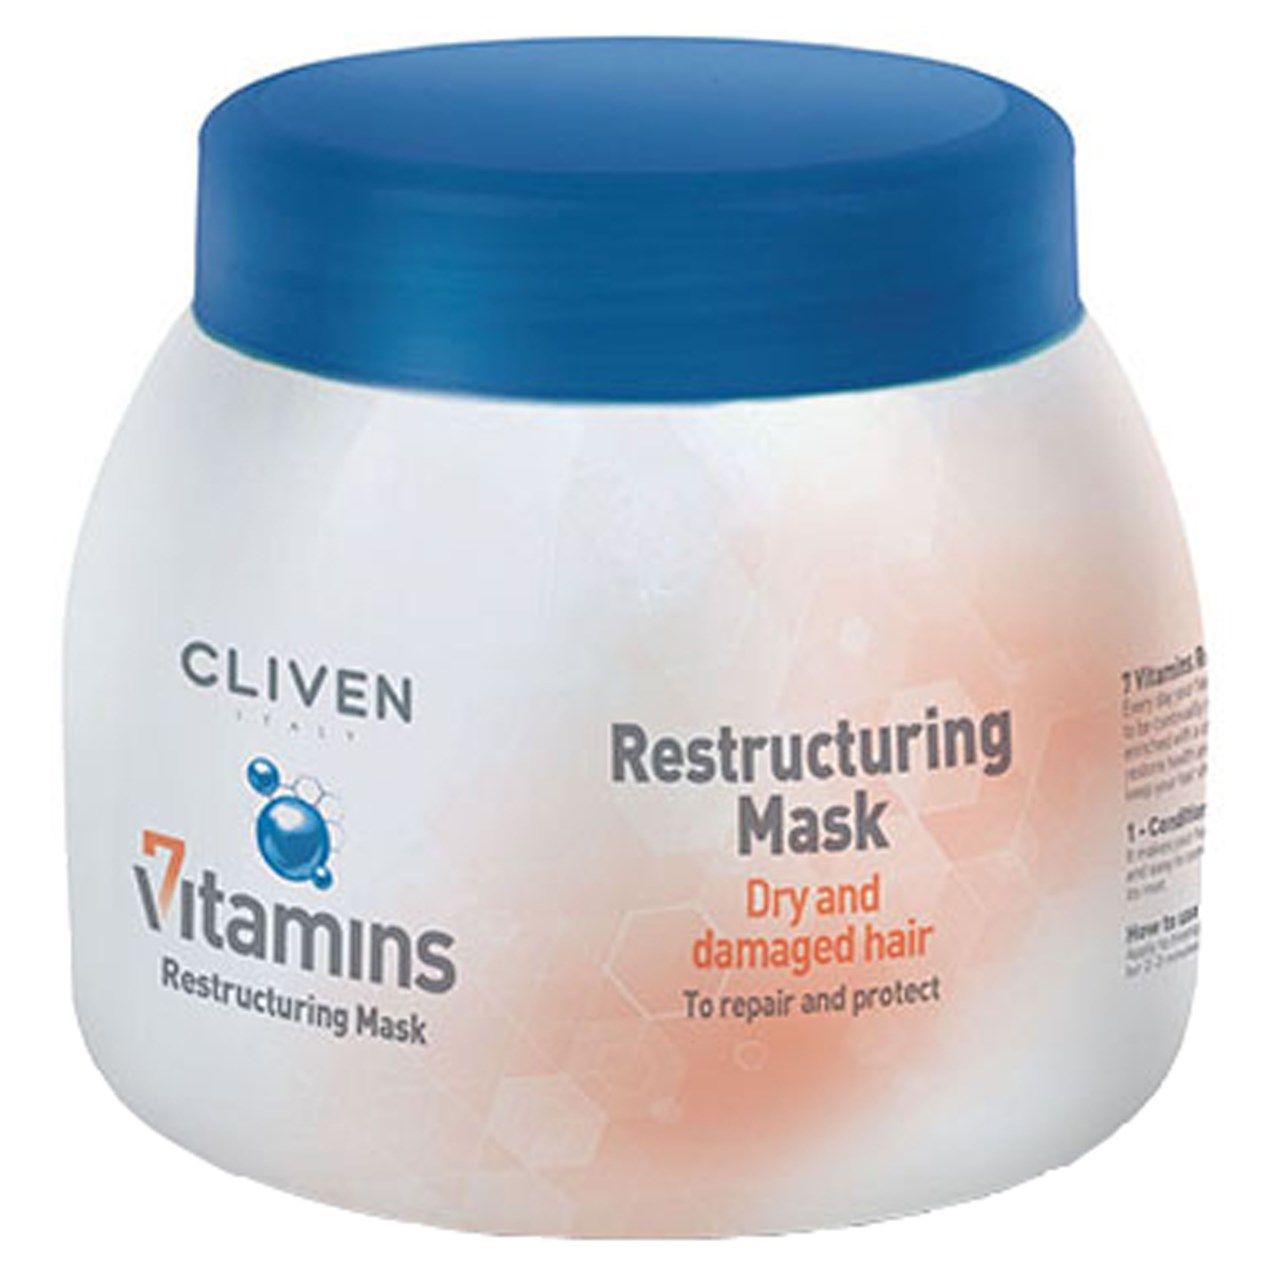 ماسک بازسازی کننده موهای خشک و آسیب دیده کلیون مدل 7 Vitamine Restructuring حجم 500 میلی لیتر -  - 1